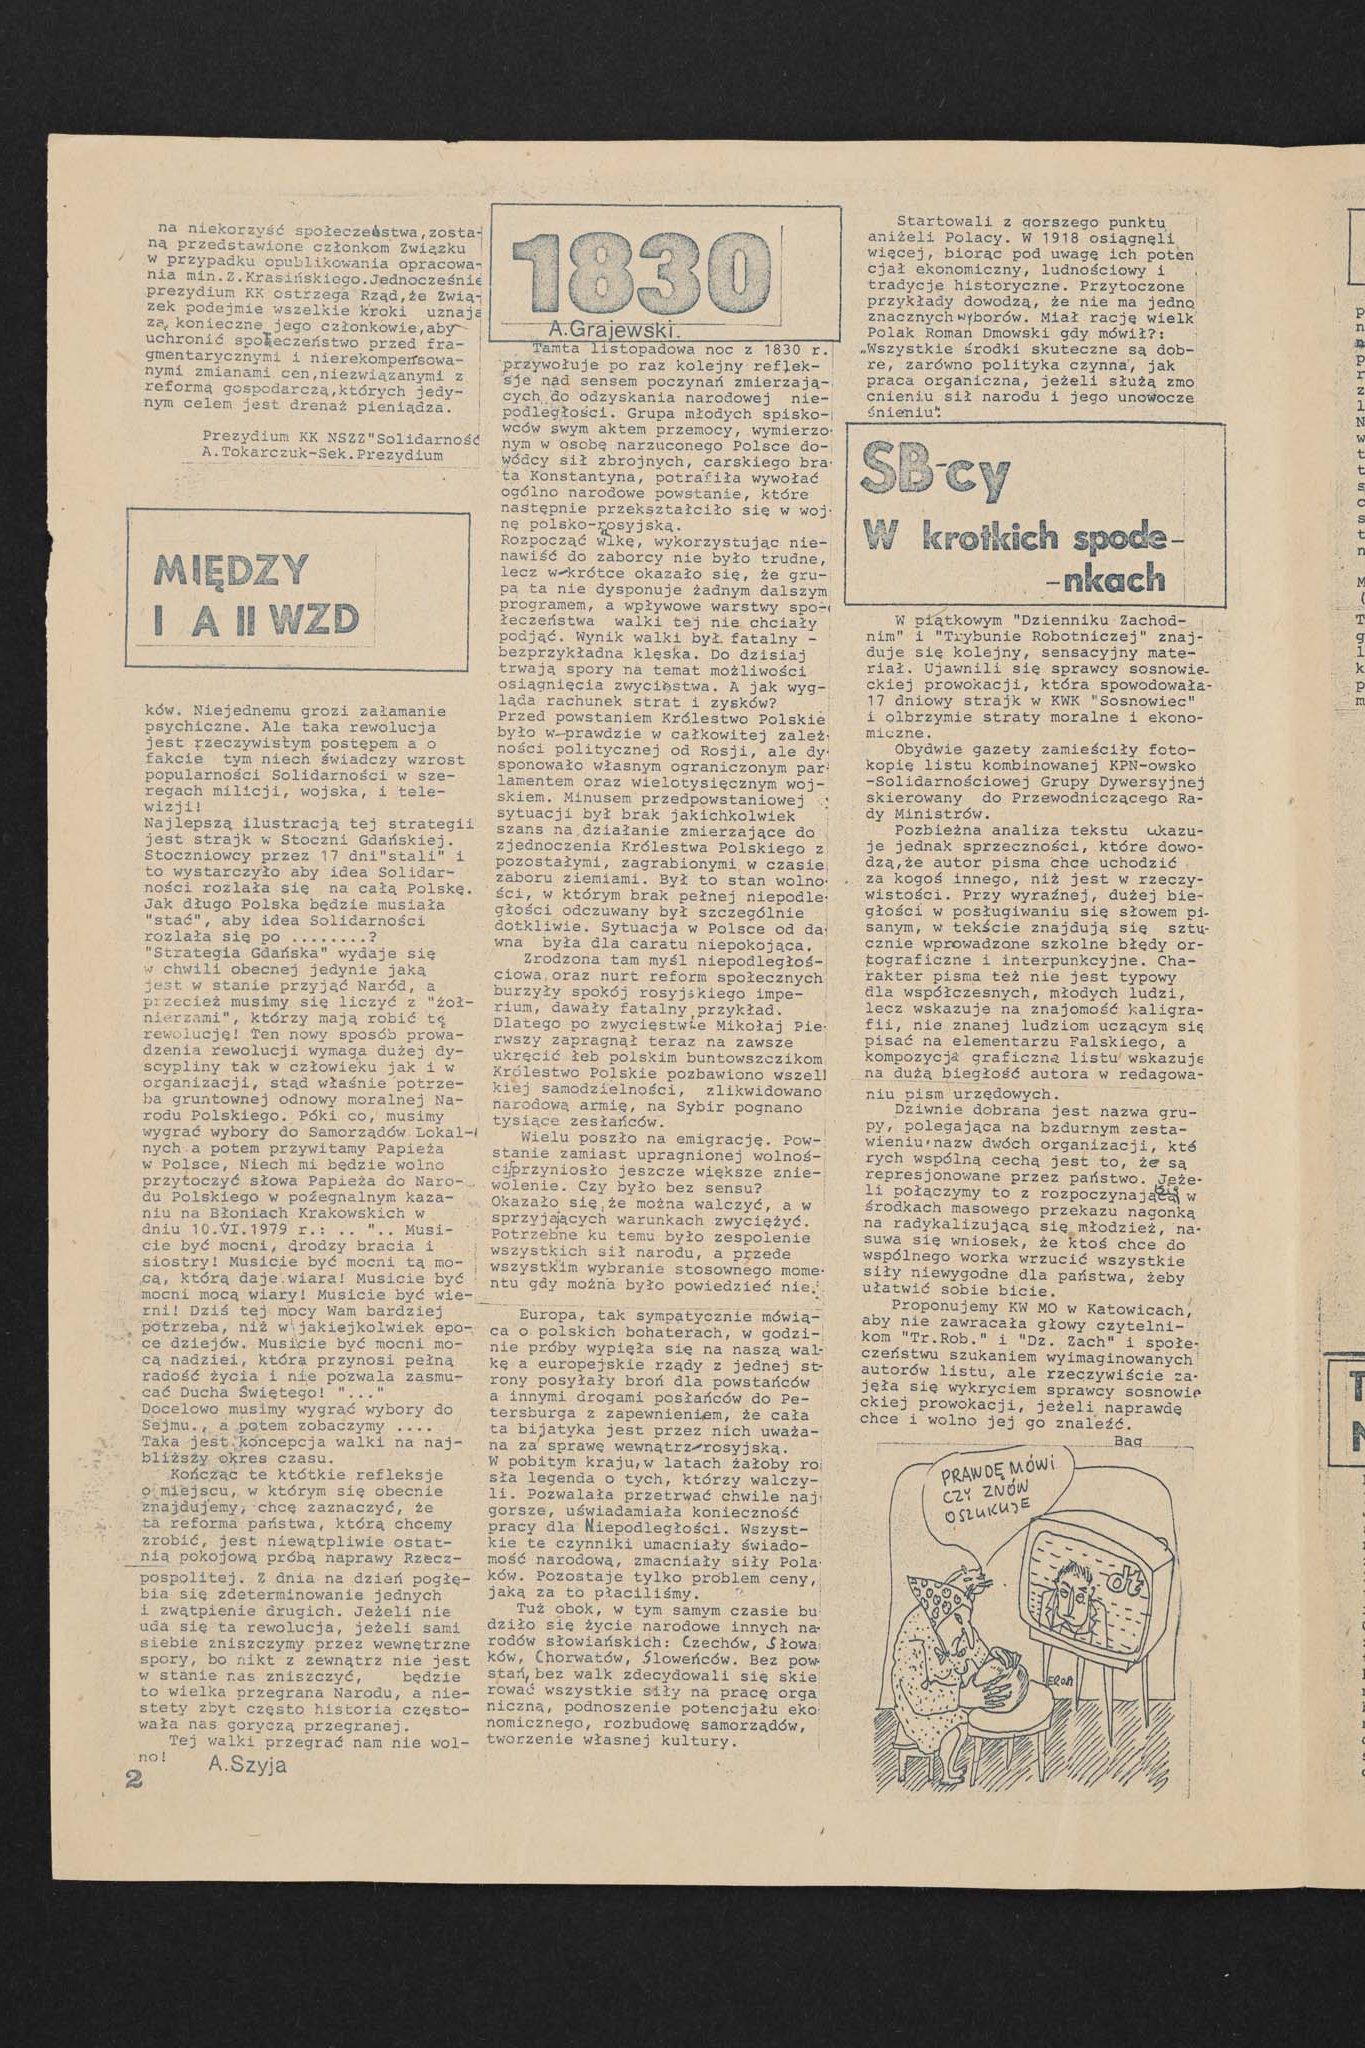 Dziennik związkowy nr 69 30.11.1981